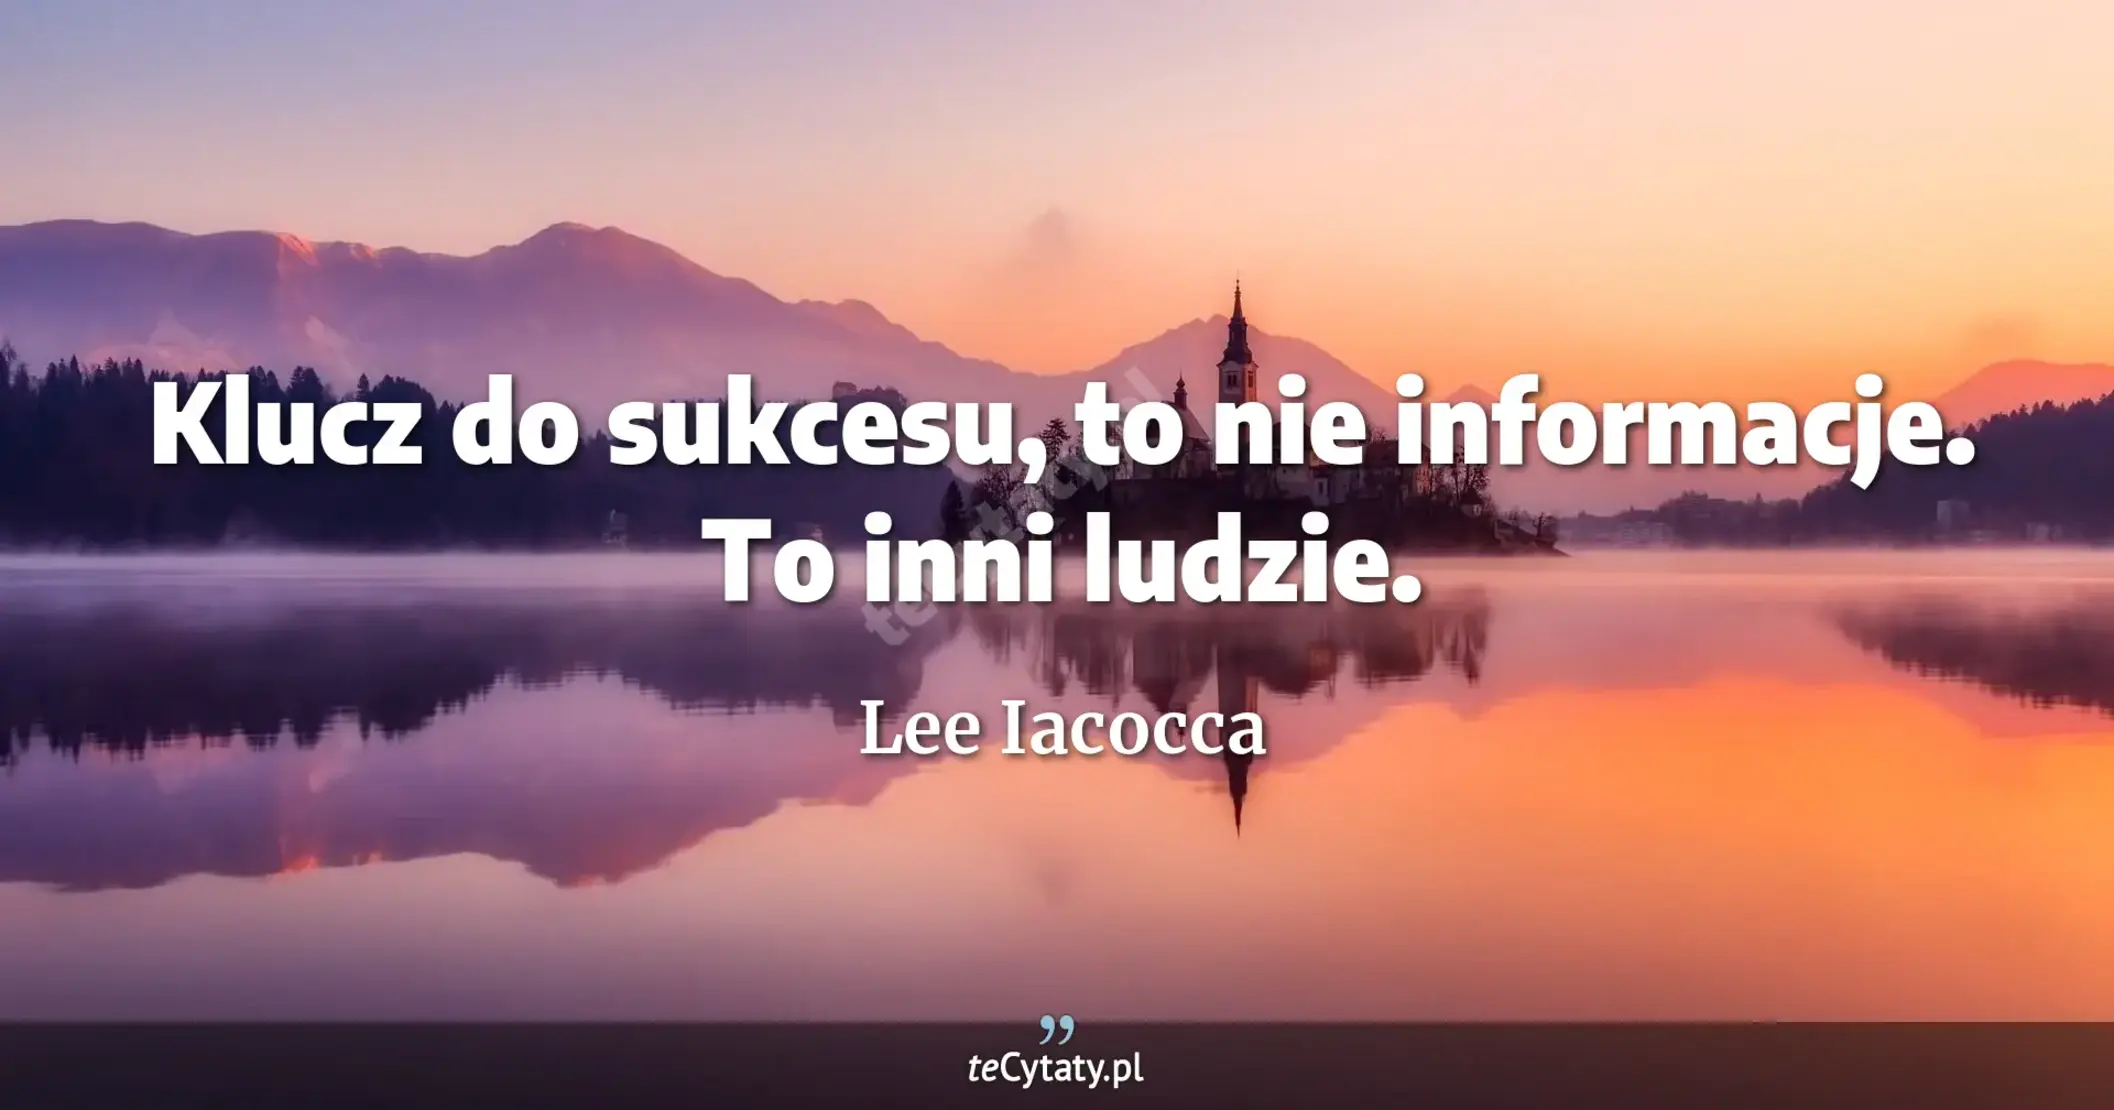 Klucz do sukcesu, to nie informacje. To inni ludzie. - Lee Iacocca